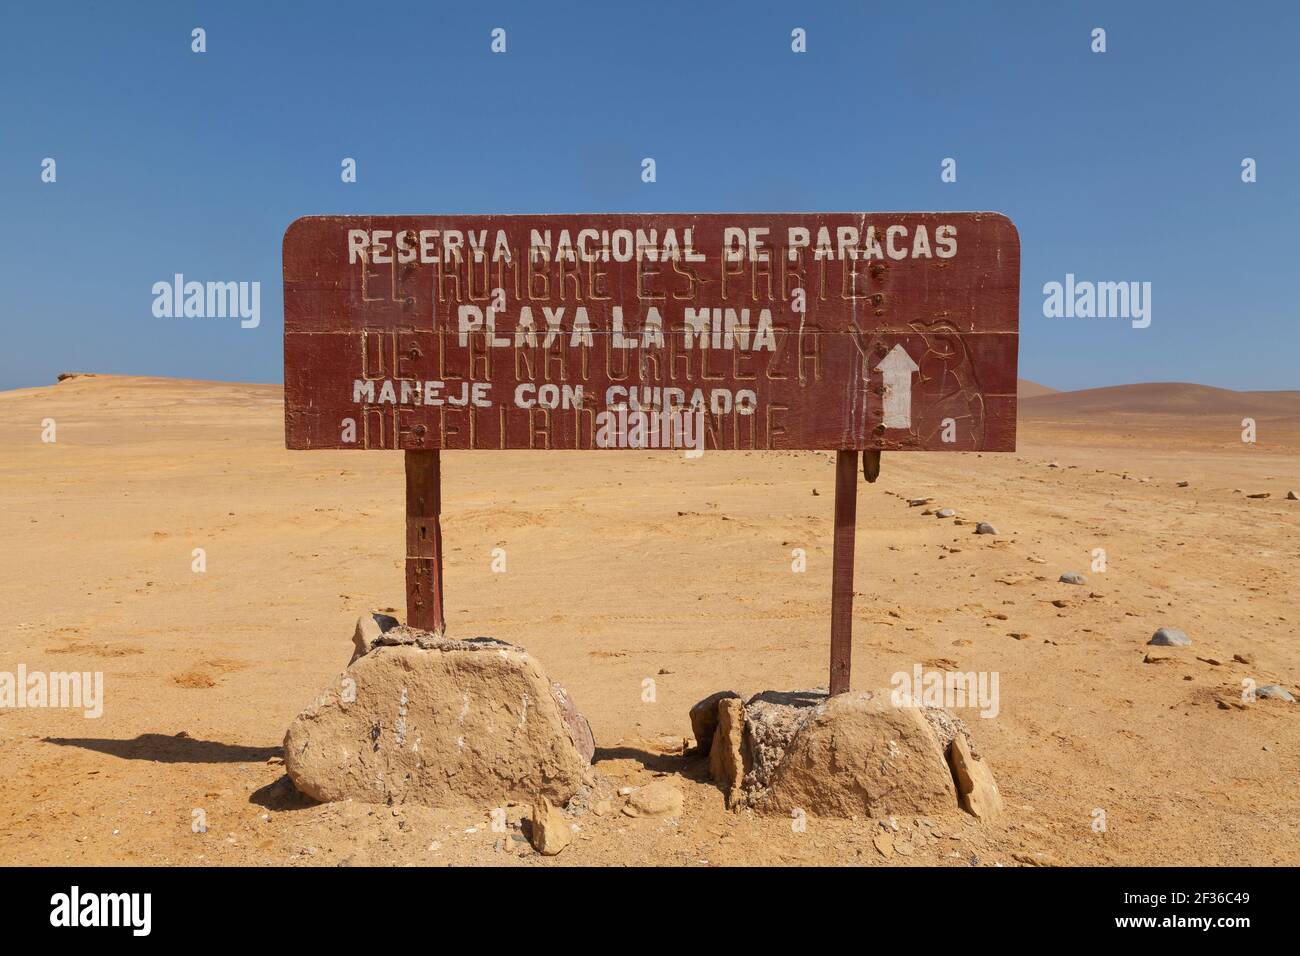 Paracas, Perú - 17 de abril de 2014: Antiguo letrero de información al visitante, en medio del desierto de Paracas, cerca de Playa las Minas, en la Reserva Nacional de Paracas Foto de stock